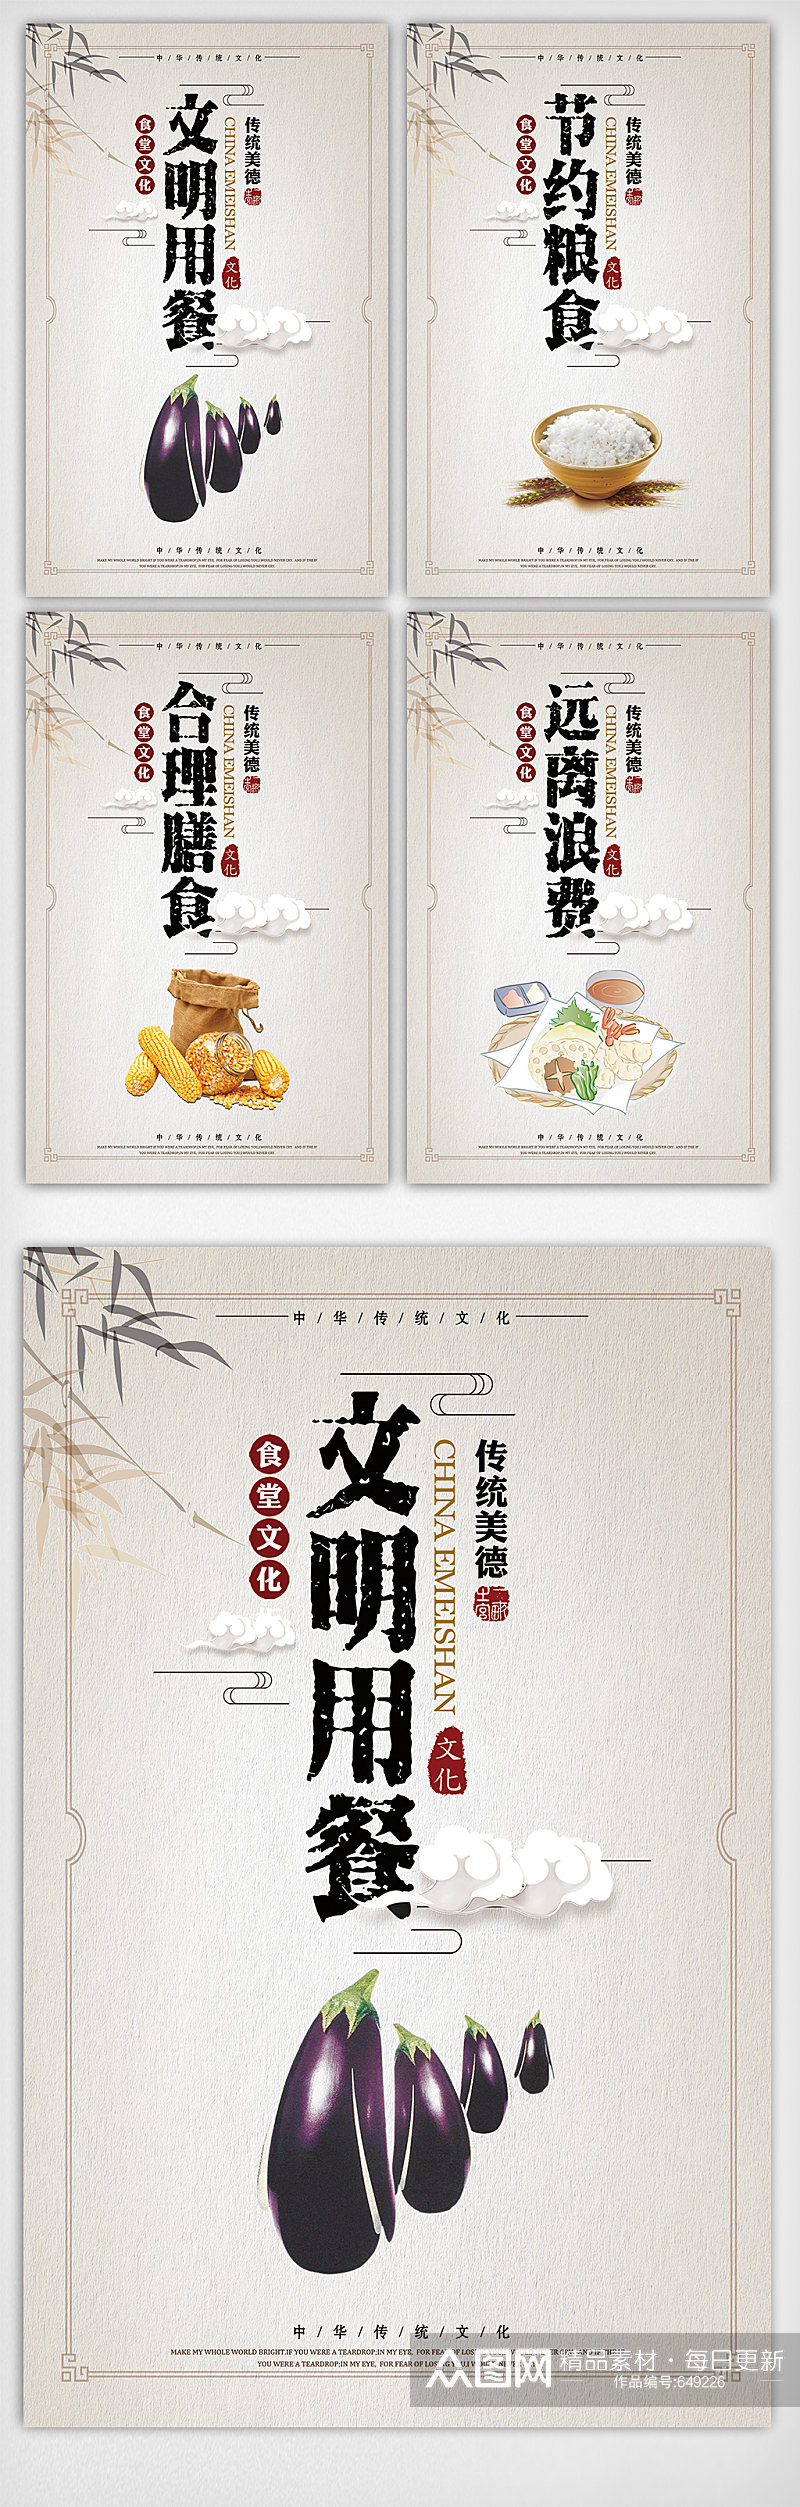 大气创意中国风食堂标语挂画模板 珍惜粮食挂画素材